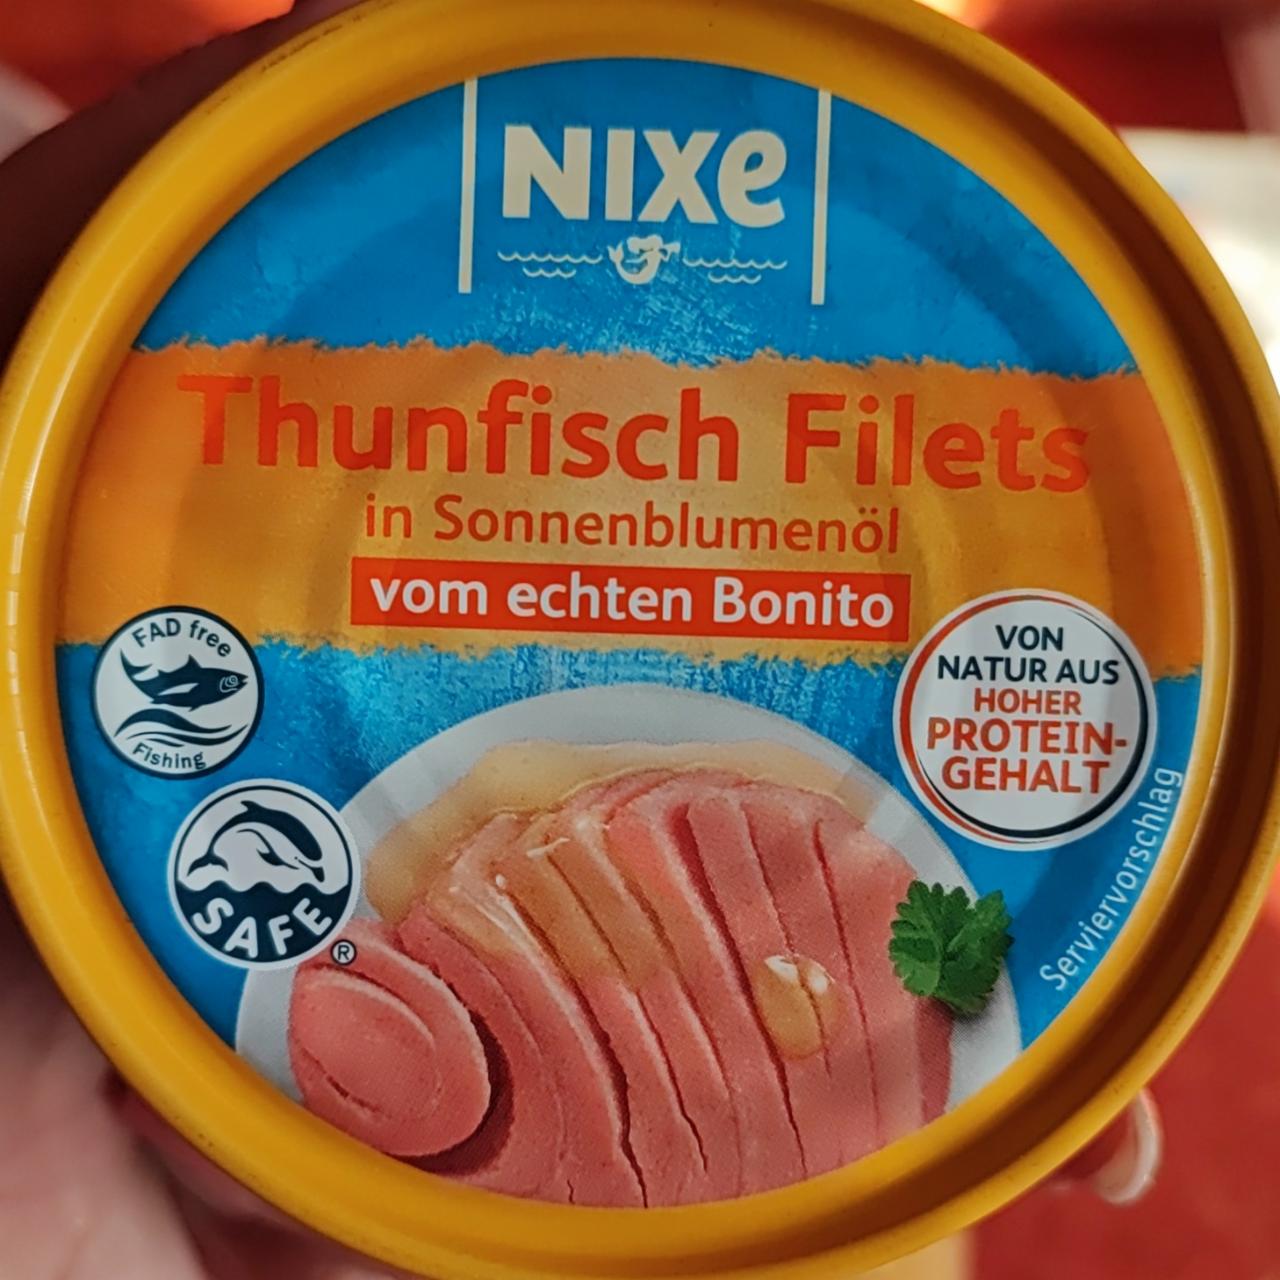 Fotografie - Thunfisch filets in Sonnenblumenöl Nixe